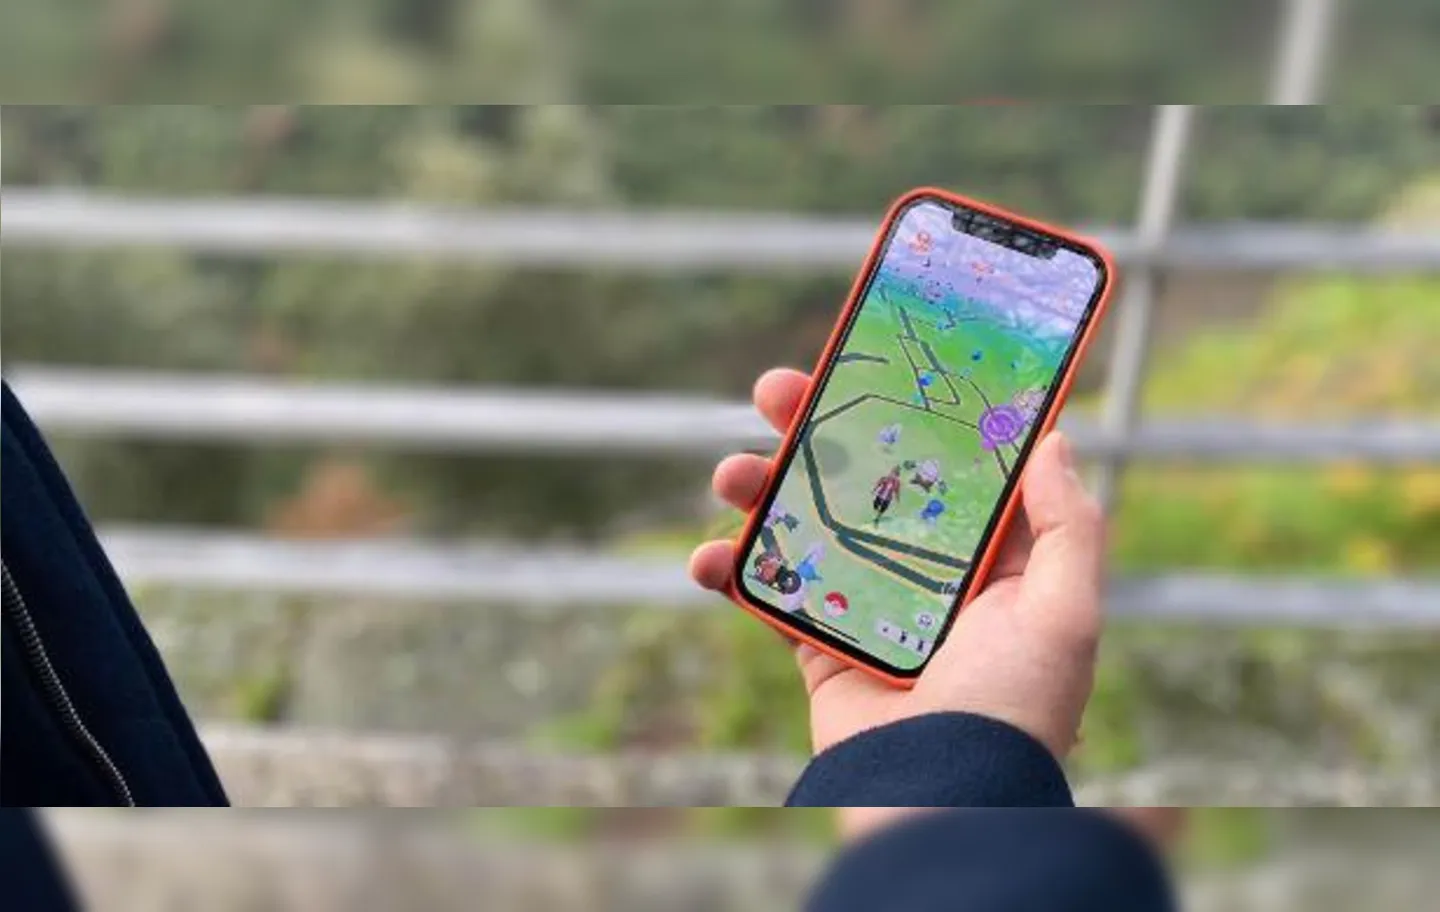 Pokémon Go consiste em localizar e capturar criaturas deste universo que aparecem virtualmente em lugares reais, visíveis apenas através de celulares